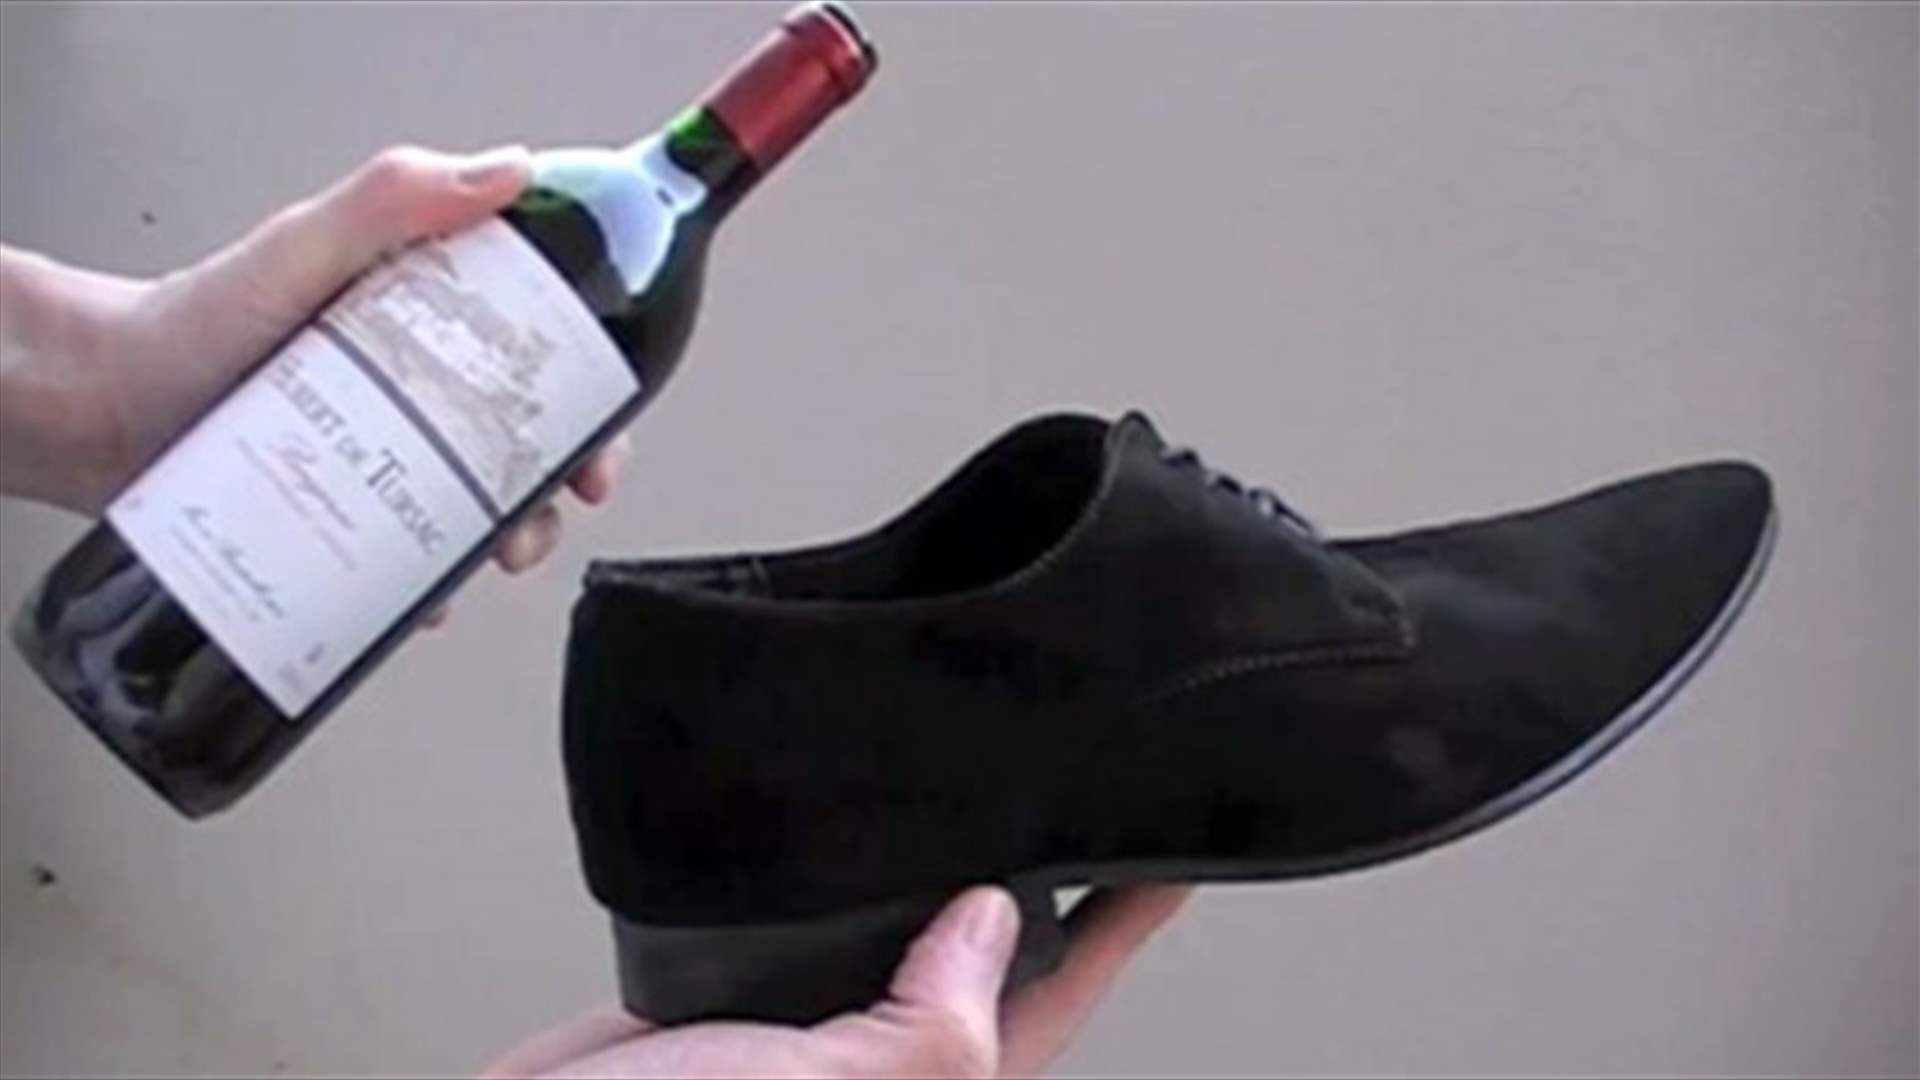 بالفيديو: طريقة غريبة لفتح زجاجة النبيذ بالحذاء